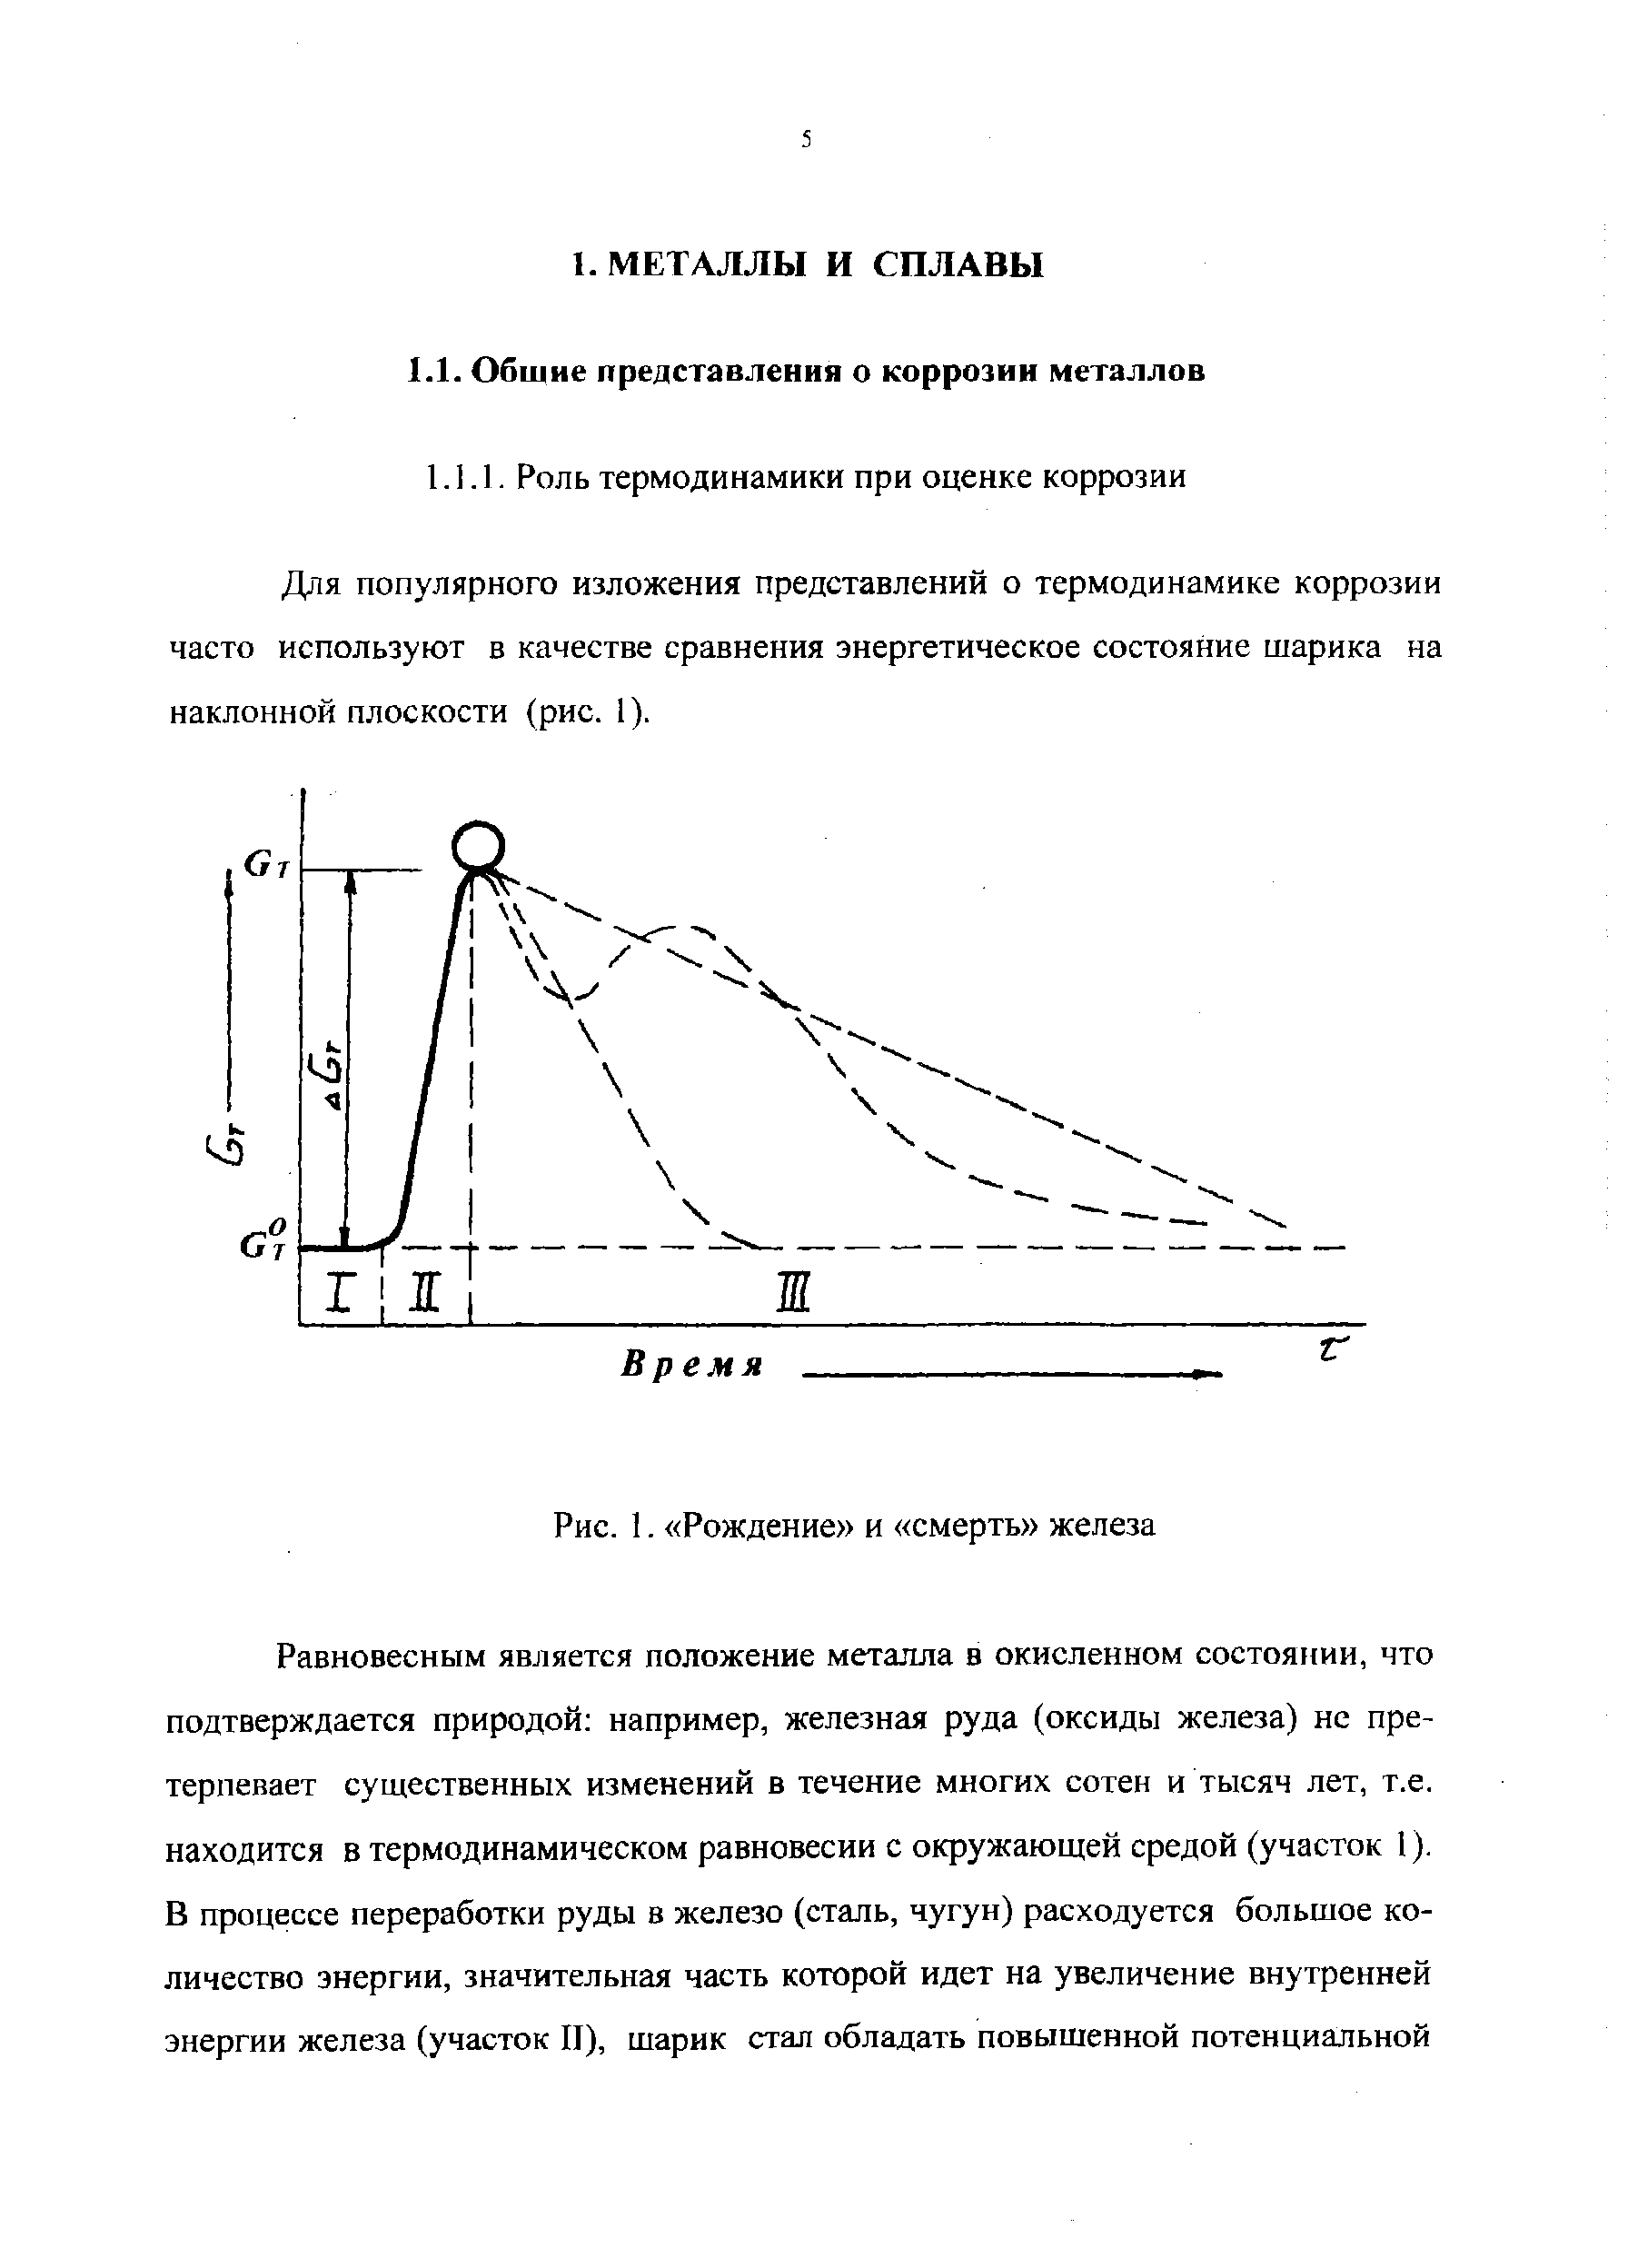 Для популярного изложения представлений о термодинамике коррозии часто используют в качестве сравнения энергетическое состояние шарика на наклонной плоскости (рис. 1).